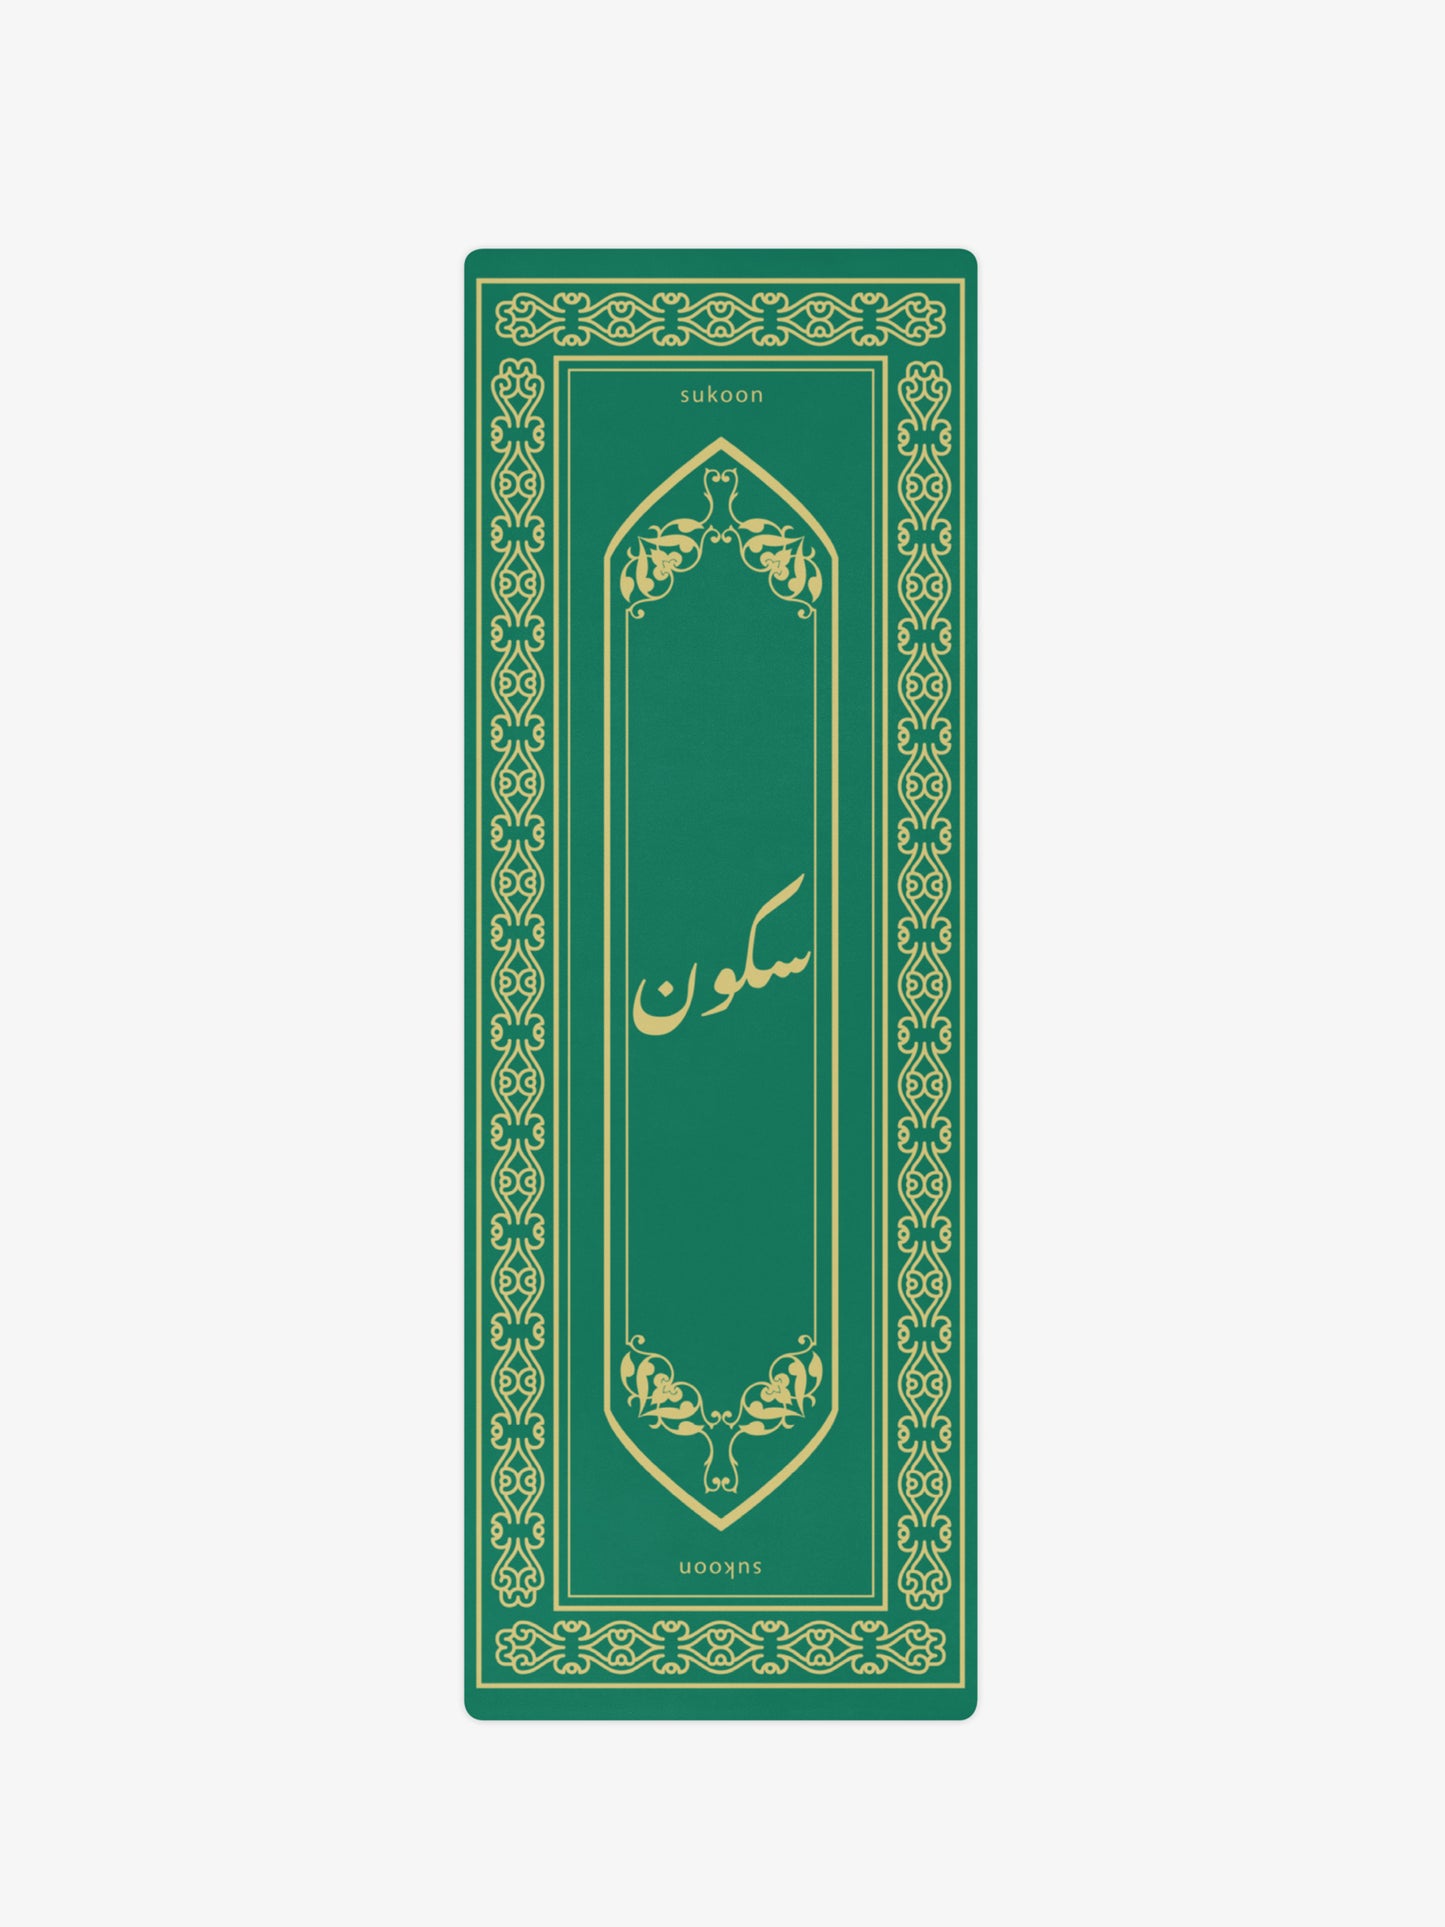 Merch | "Sukoon" Urdu Microsuede Yoga Mat